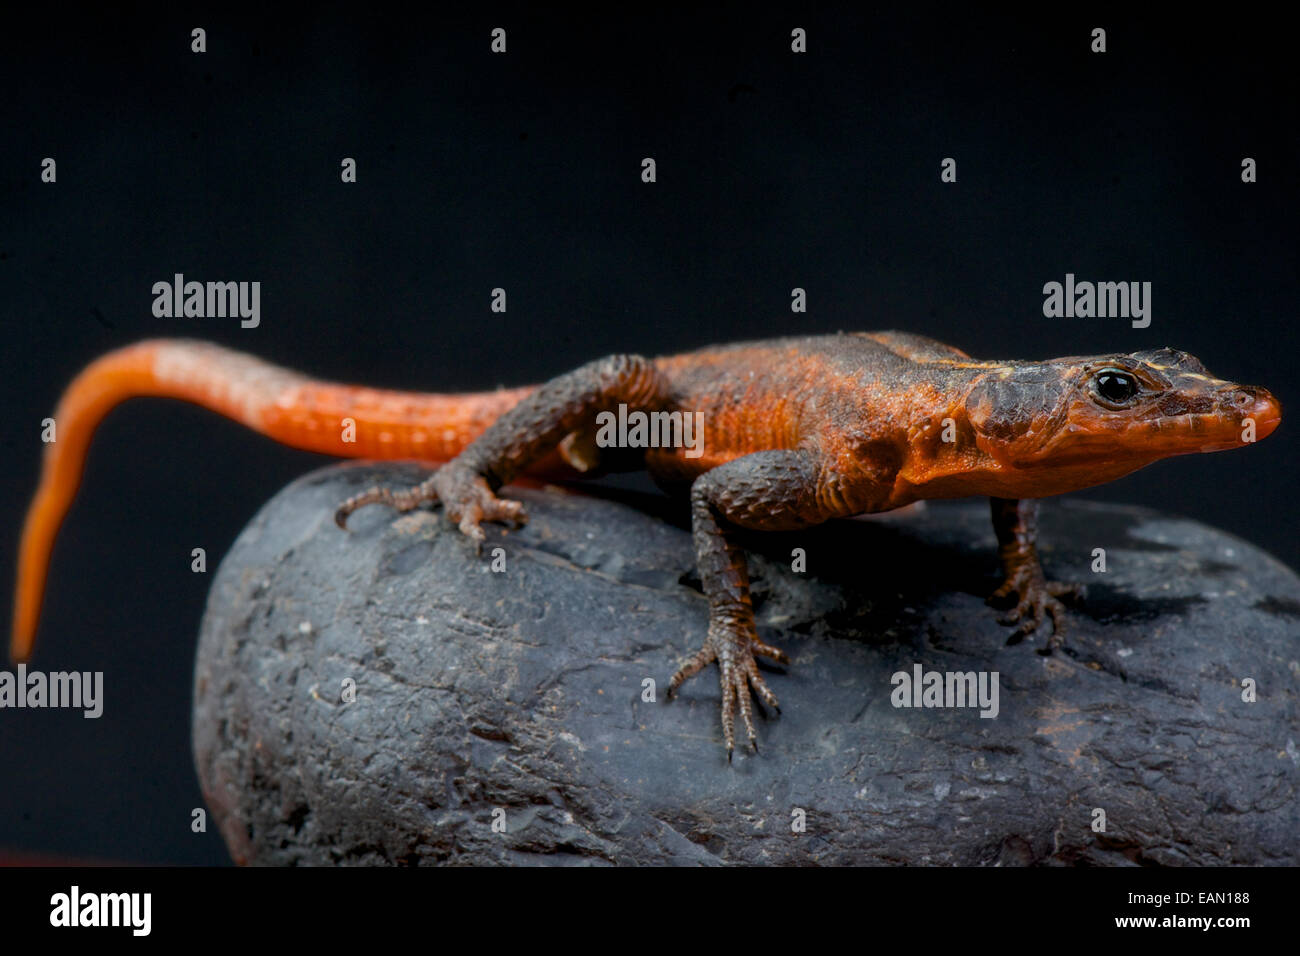 Red rock lizard / Platysaurus janssoni Stock Photo